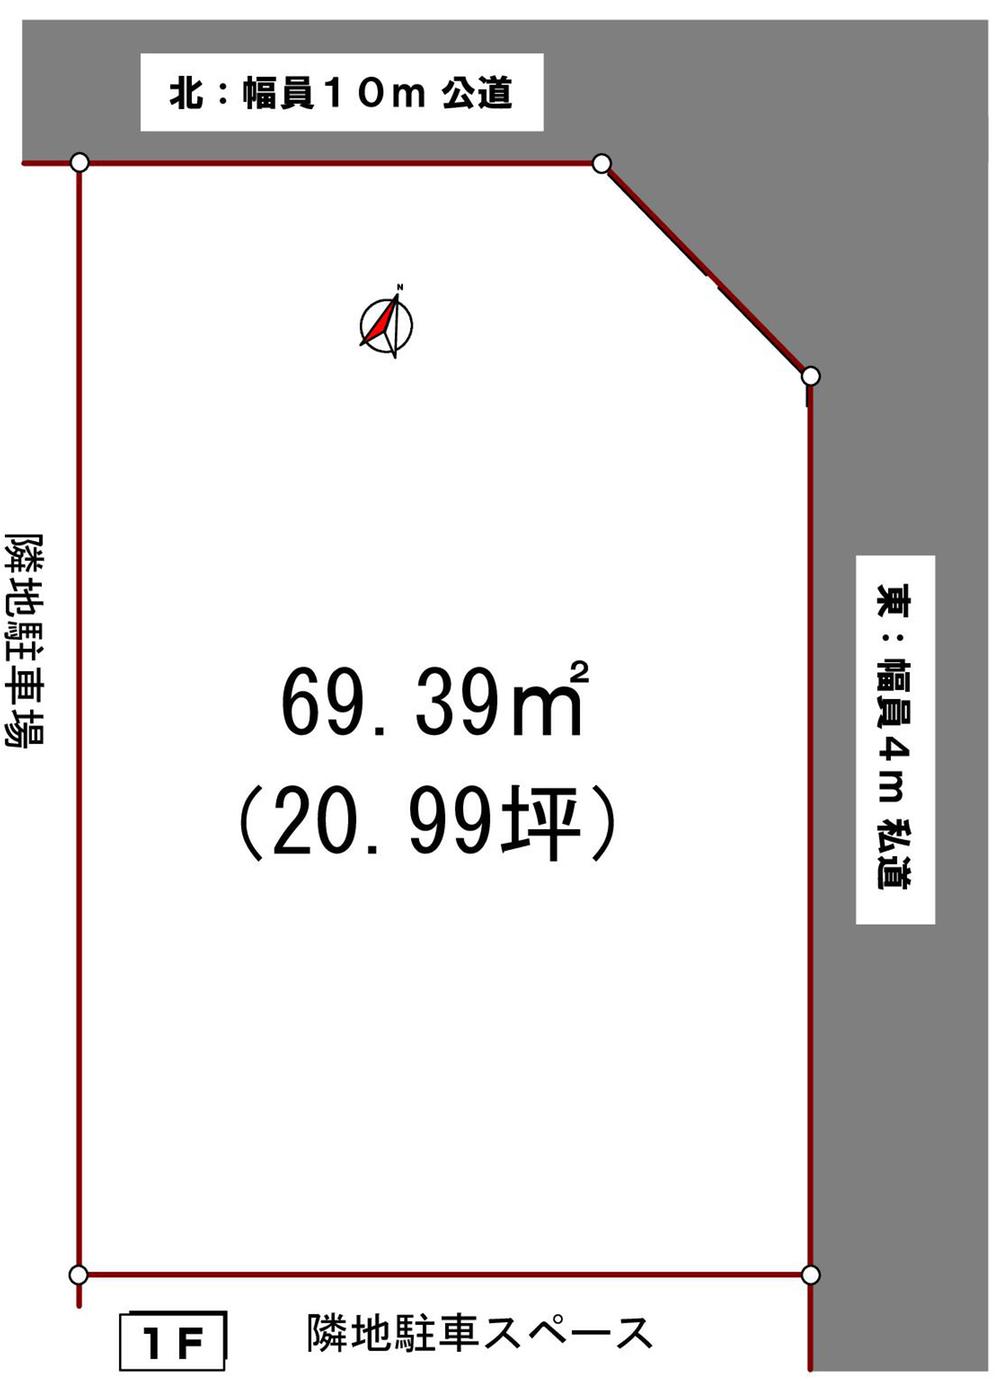 Compartment figure. 24,800,000 yen, 4DK, Land area 69.39 sq m , Building area 82.62 sq m